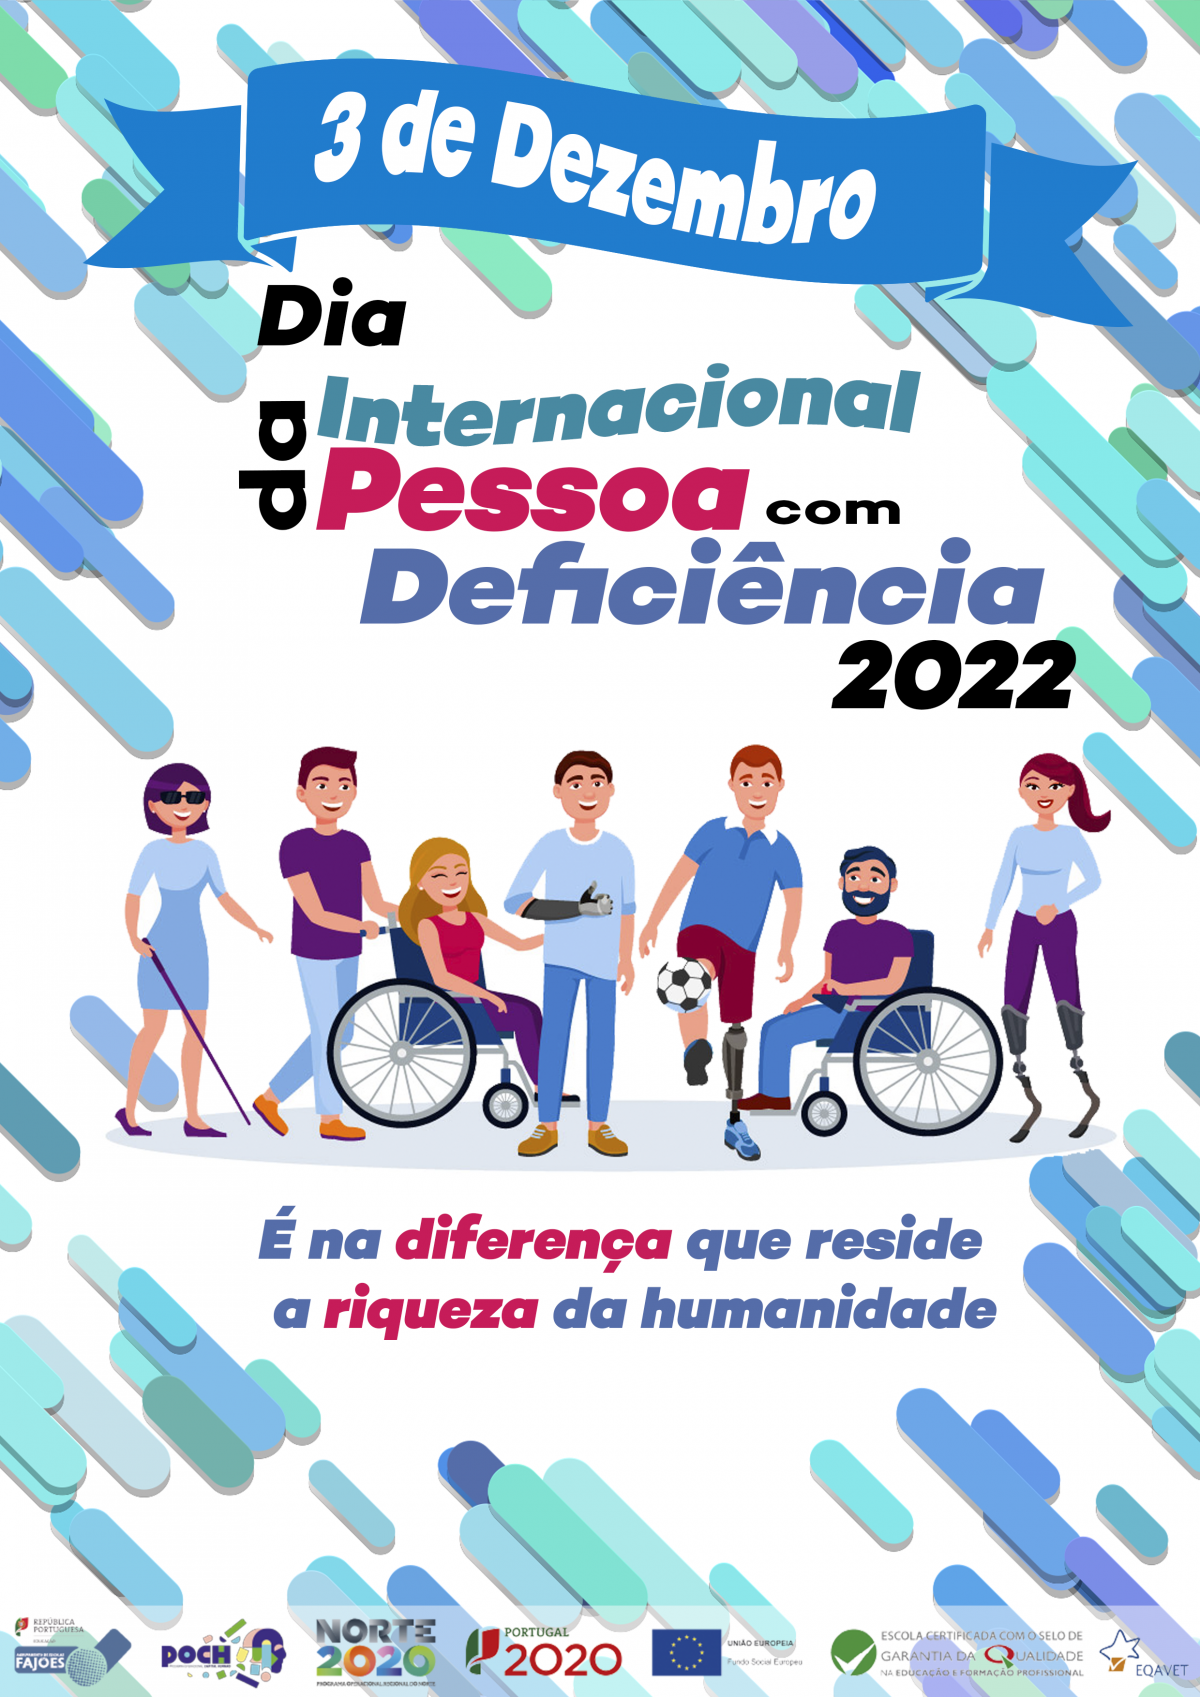 Dia Internacional das Pessoas com Deficiência - 3 dezembo 2022